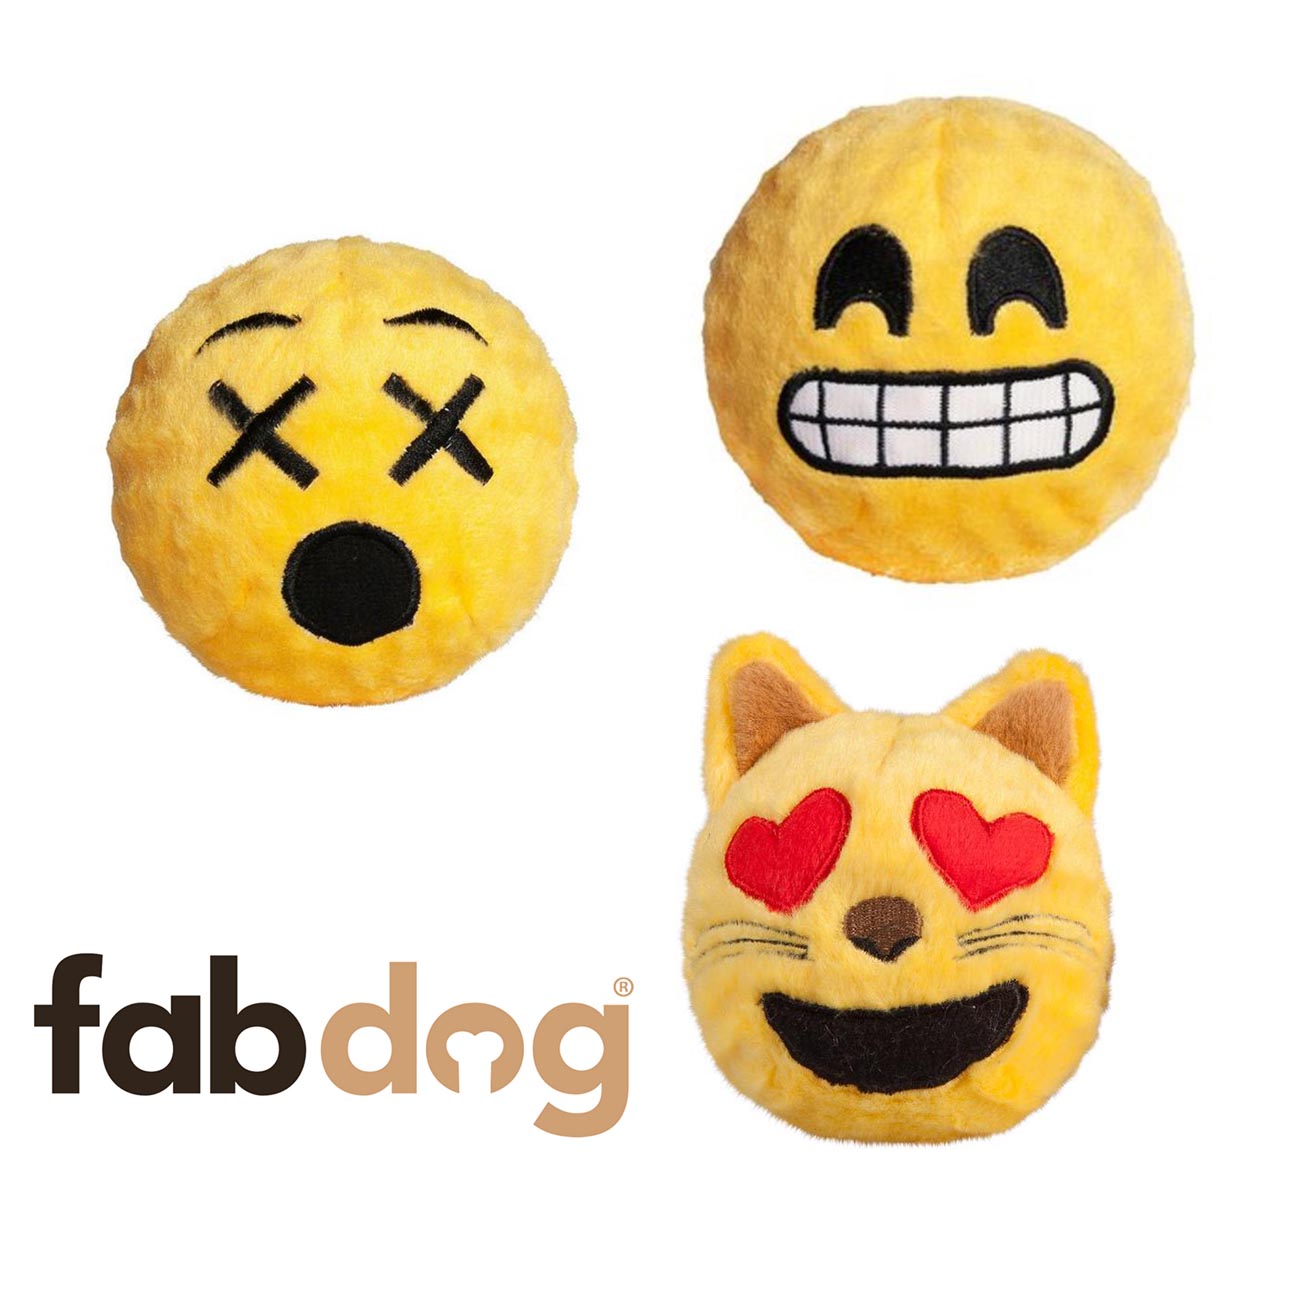 Fabdog - Emoji Ball